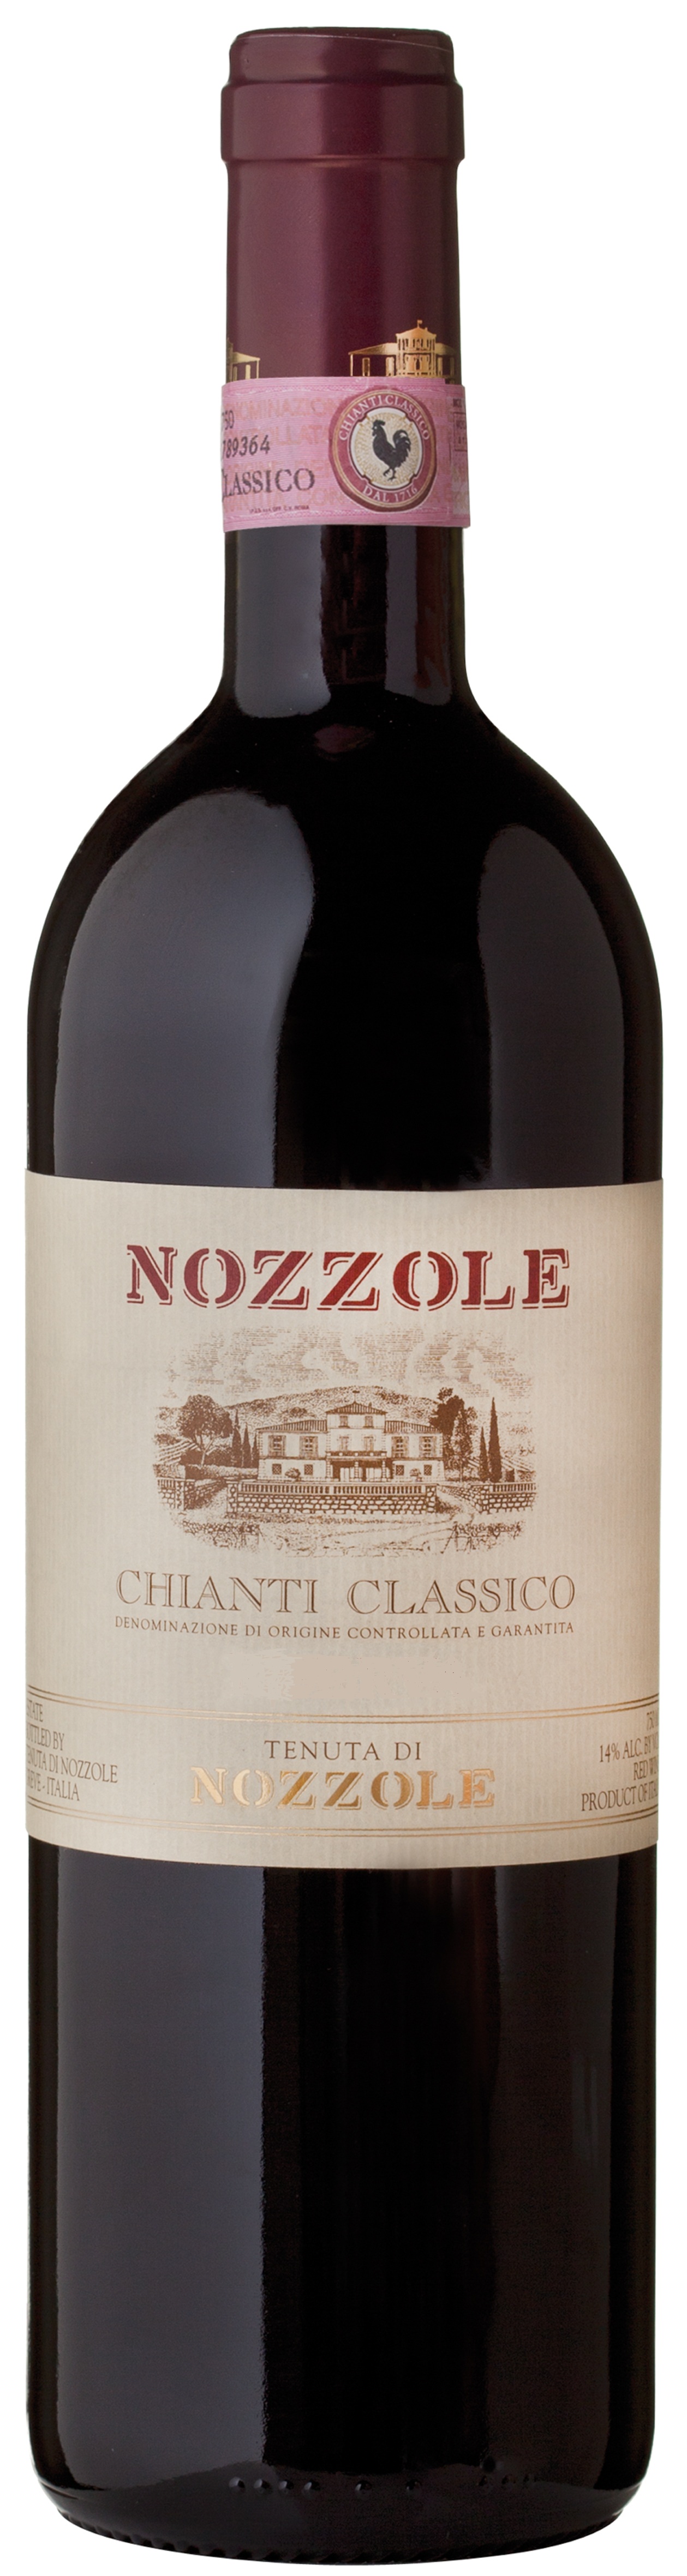 2016 Nozzole Chianti Classico Riserva - click image for full description